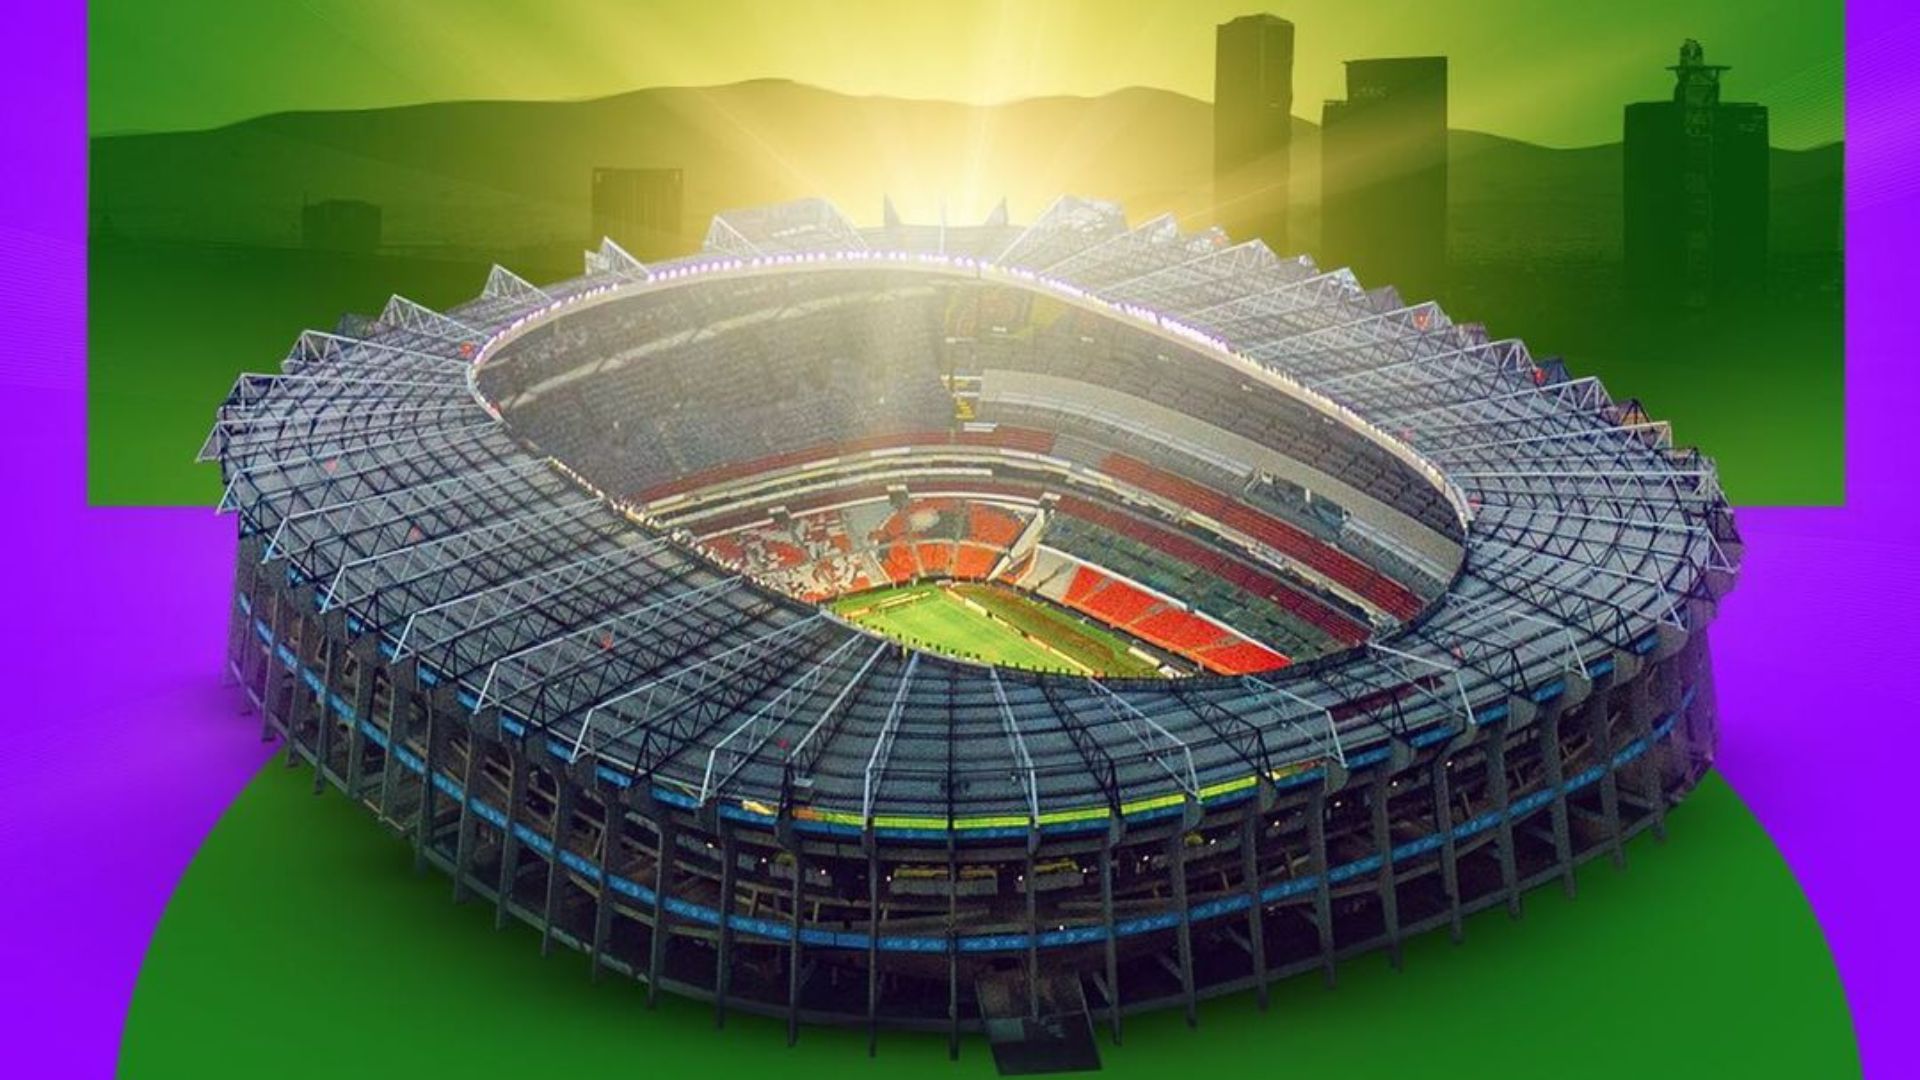 El Estadio Azteca recibirá por tercera vez un juego inaugural de Copas del Mundo, luego de 1970 y 1986. (Foto Prensa Libre: FIFA)